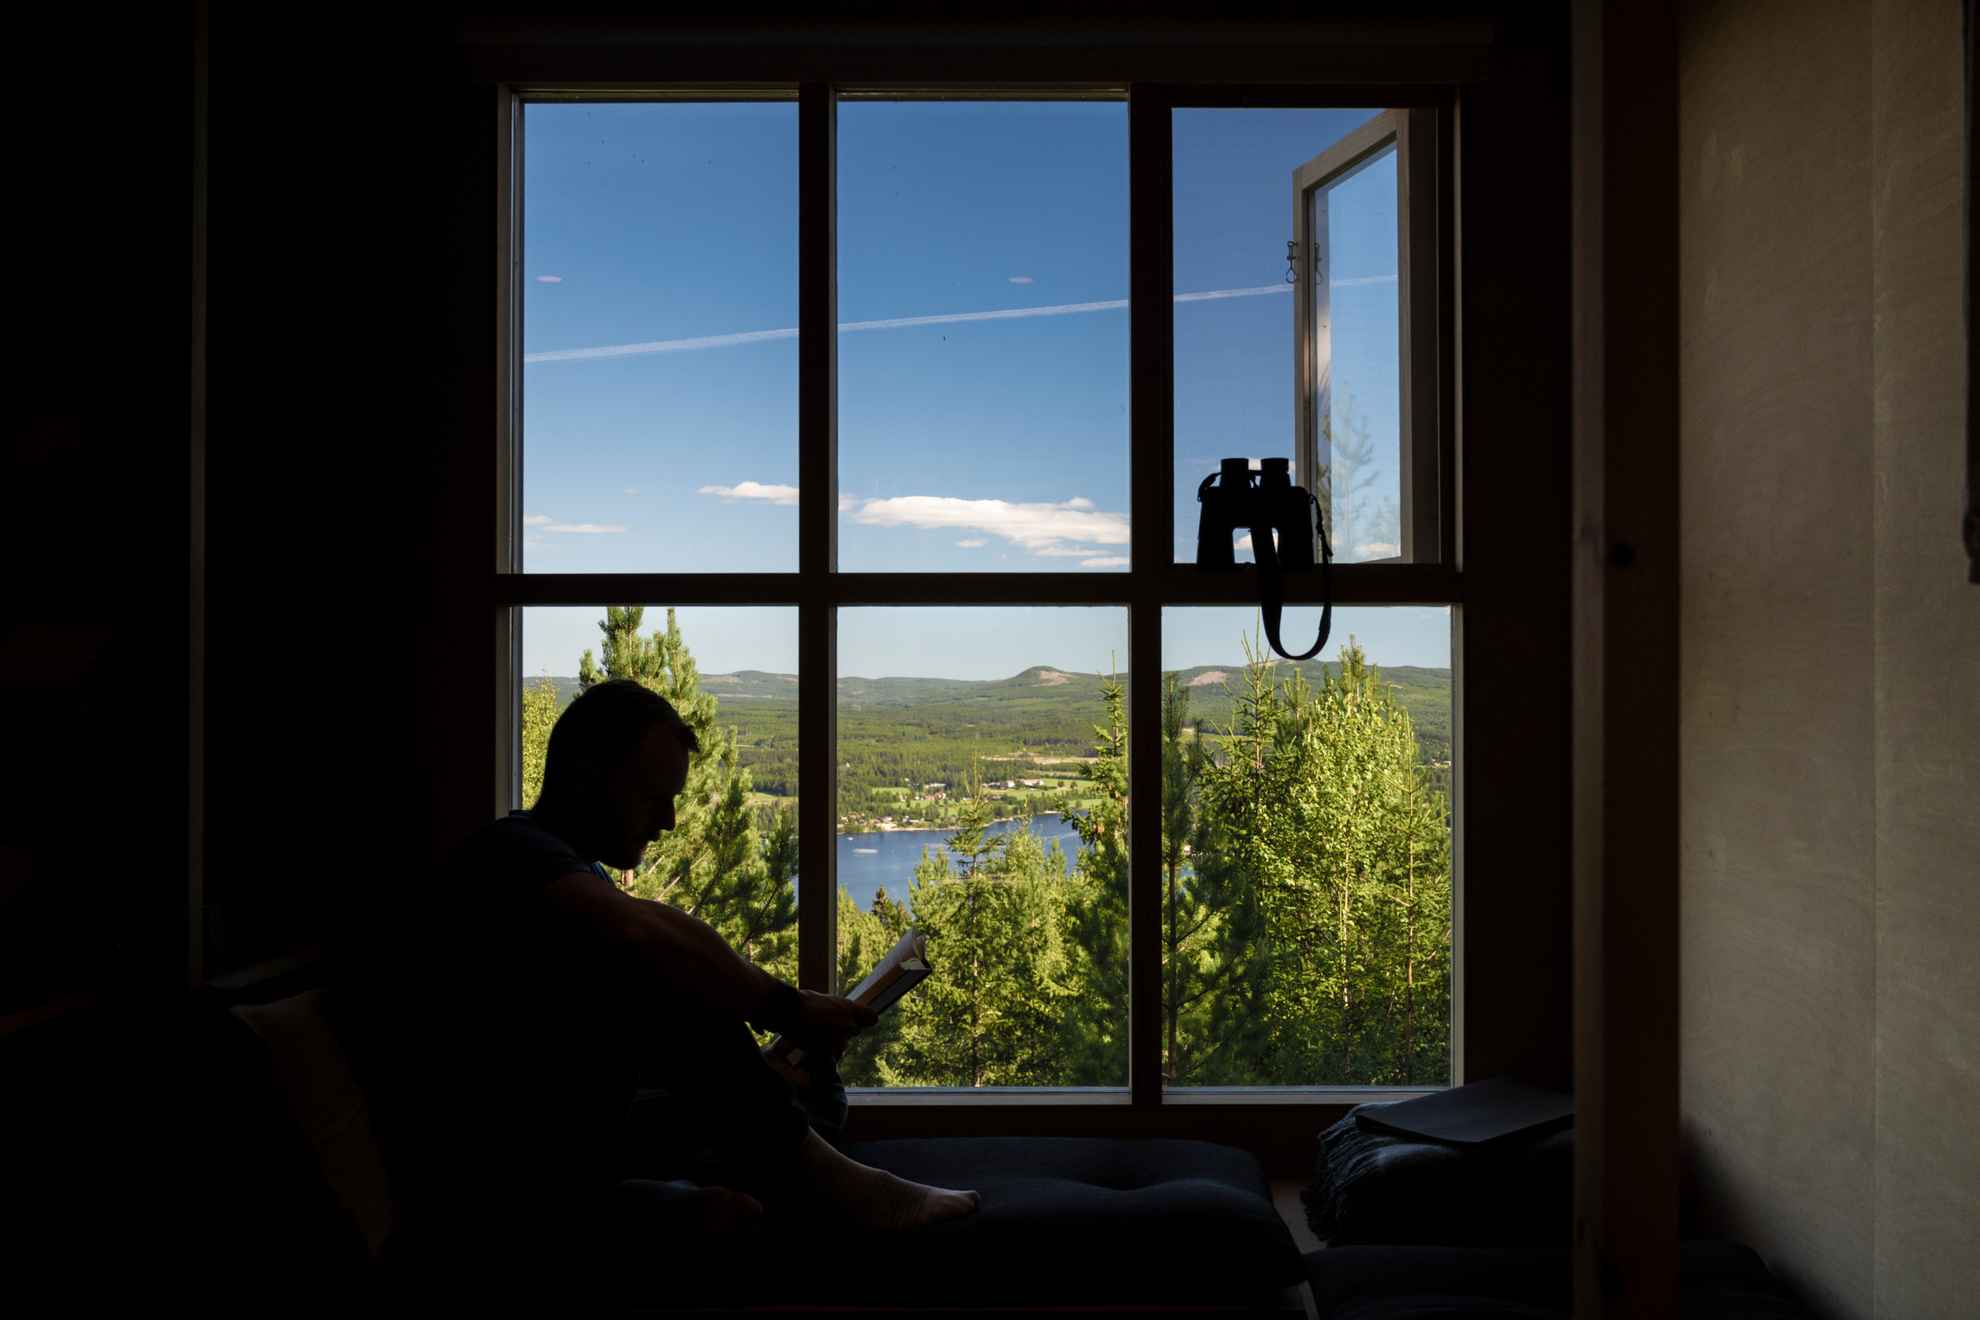 Silhouet van een man die een boek leest tegen een groot raam en uitkijkt over de blauwe lucht en de bergen erboven in Hälsingland, met een verrekijker in de aanslag.